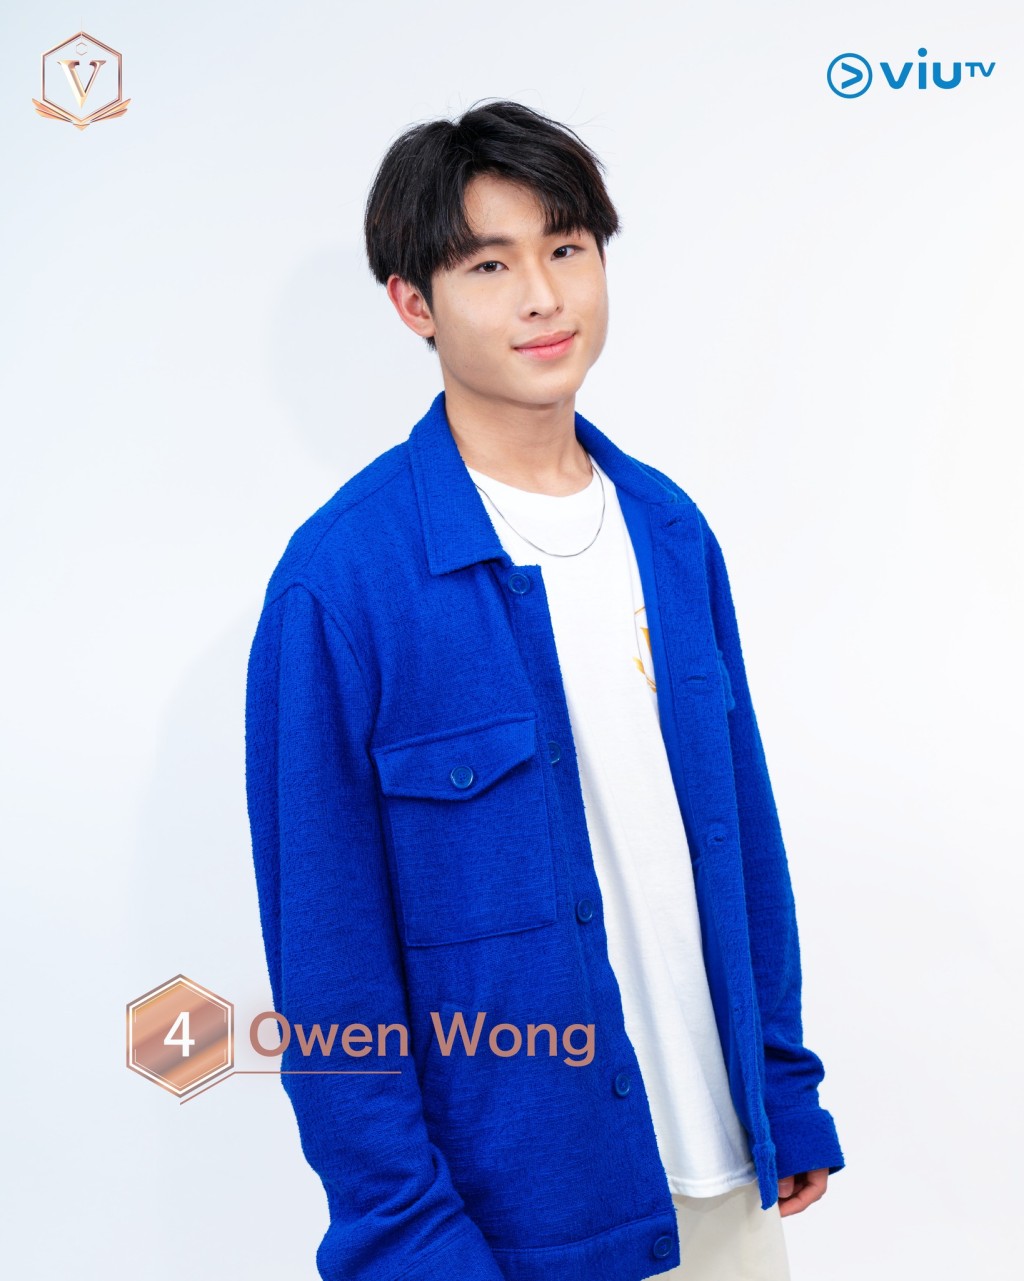 王诺言 (Owen Wong） 年龄： 17 职业： 全职Busker 擅长： 唱歌、篮球 IG：nokyin____